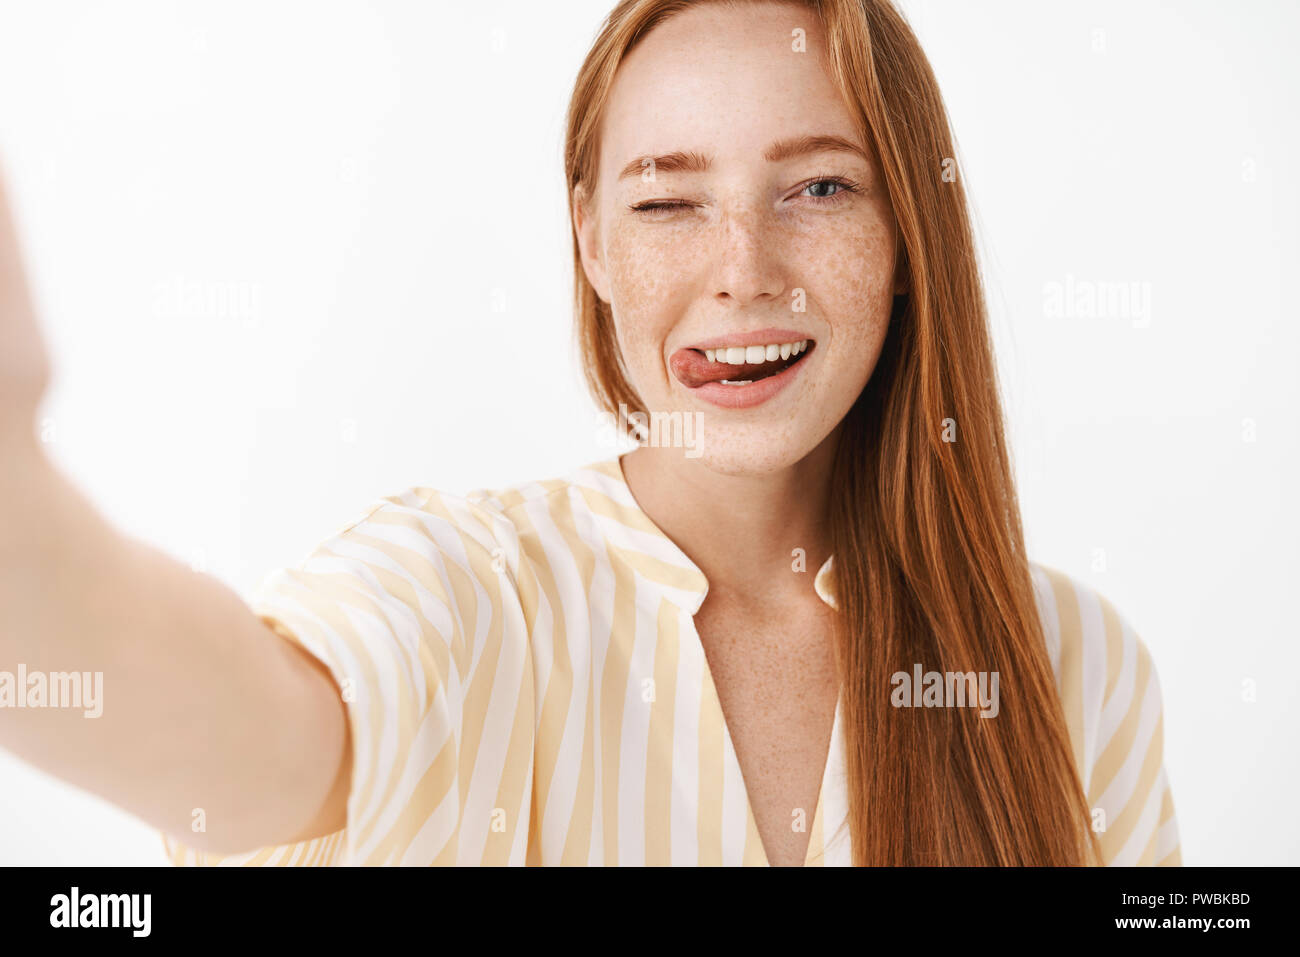 Belle femme rousse féminin avec mignon rousseur clignant de sticking out tongue flirty et joyeusement la main en tirant vers la caméra comme si la prise sur smartphone selfies tout en étant en vacances Banque D'Images